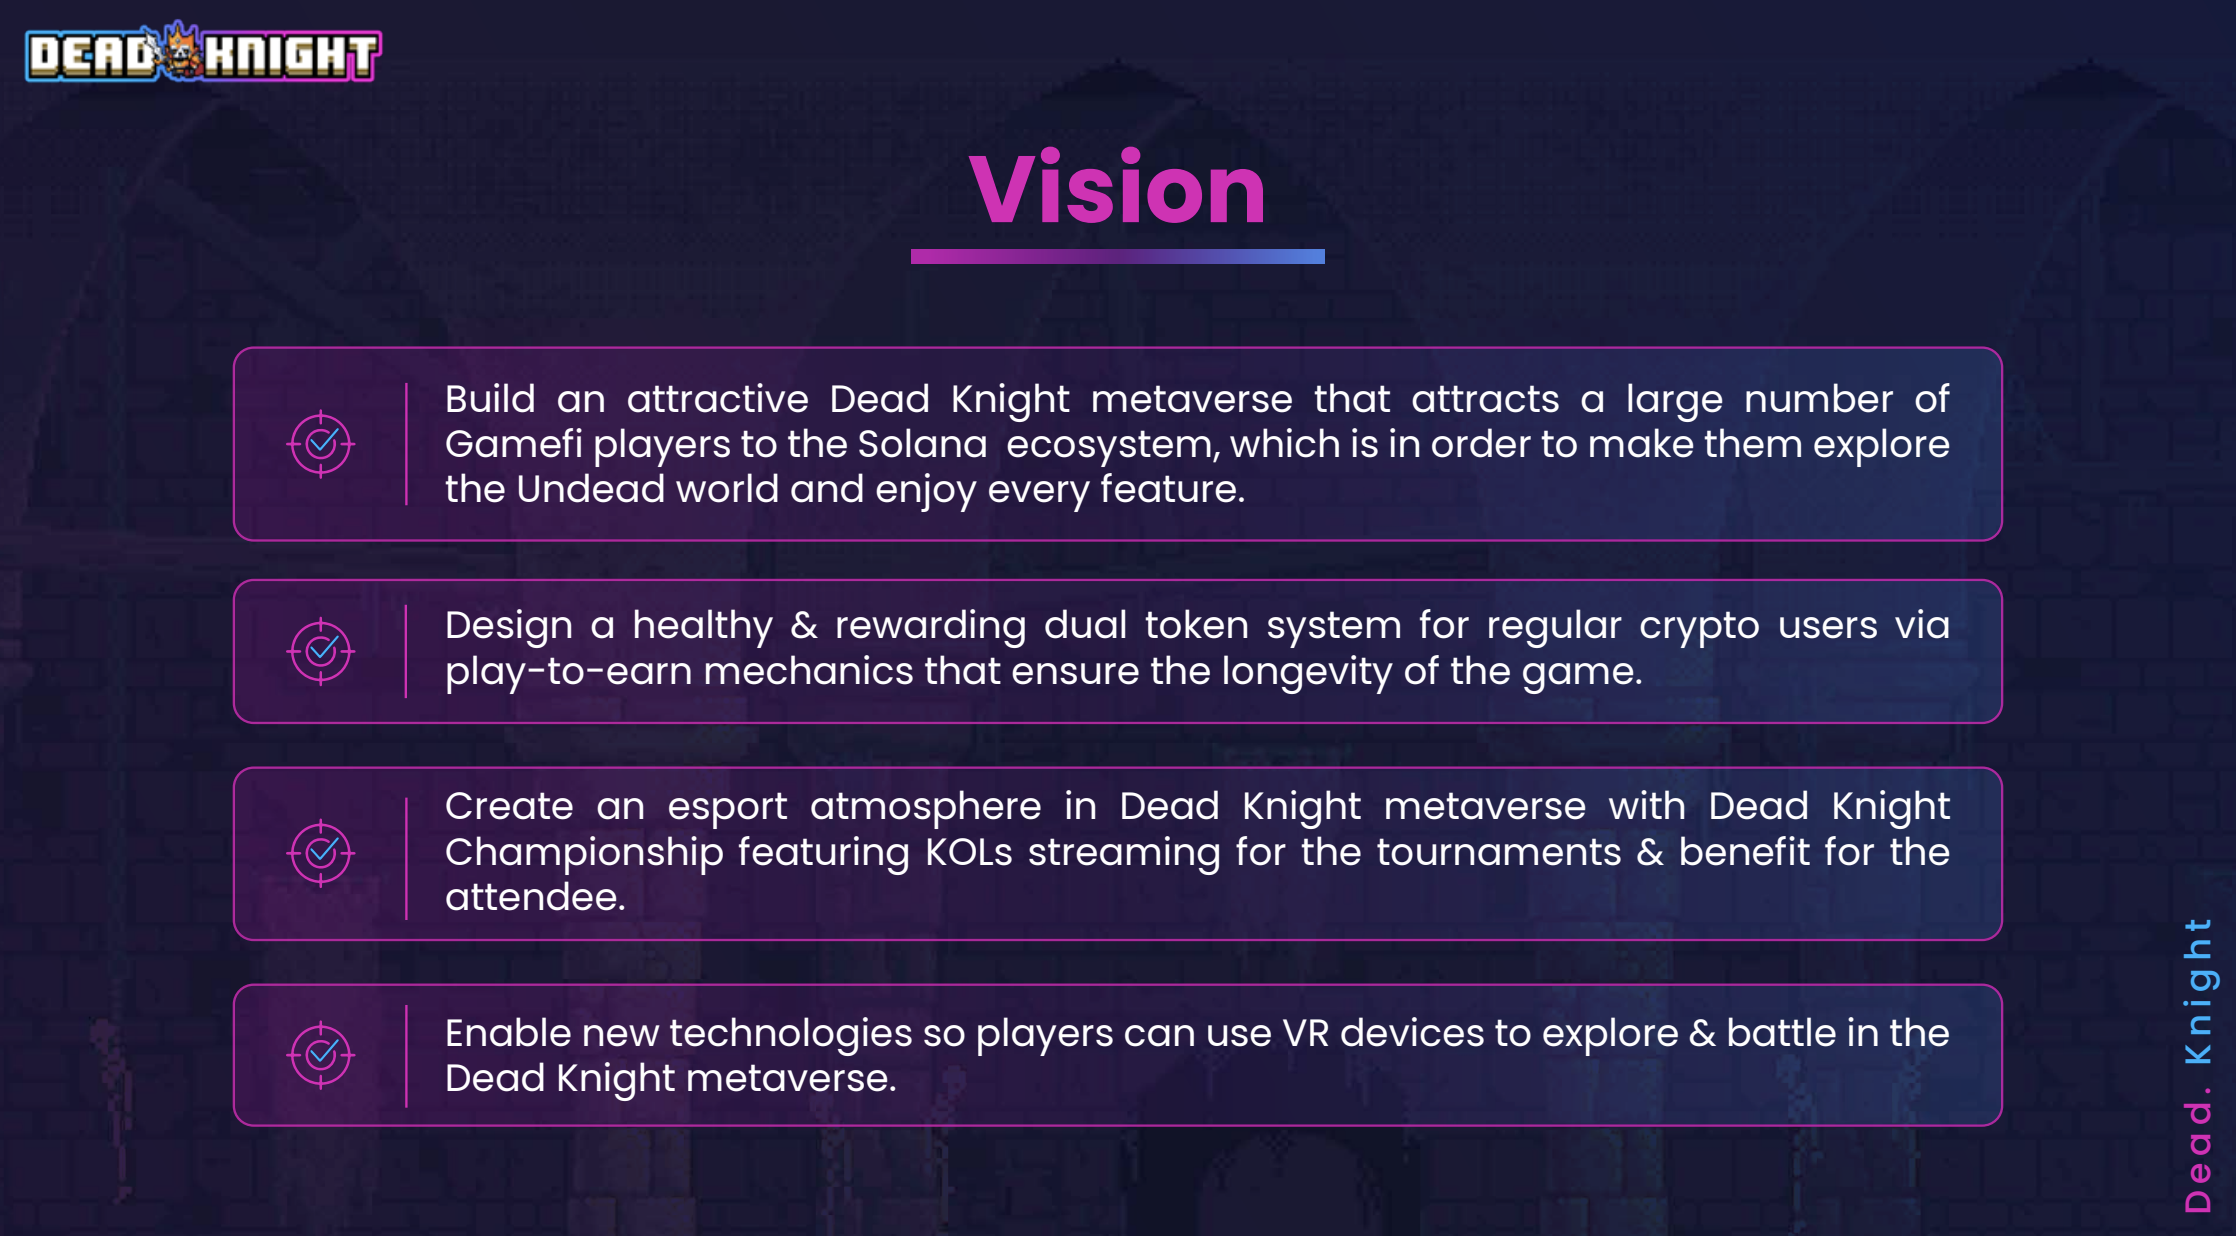 Dead Knight Vision